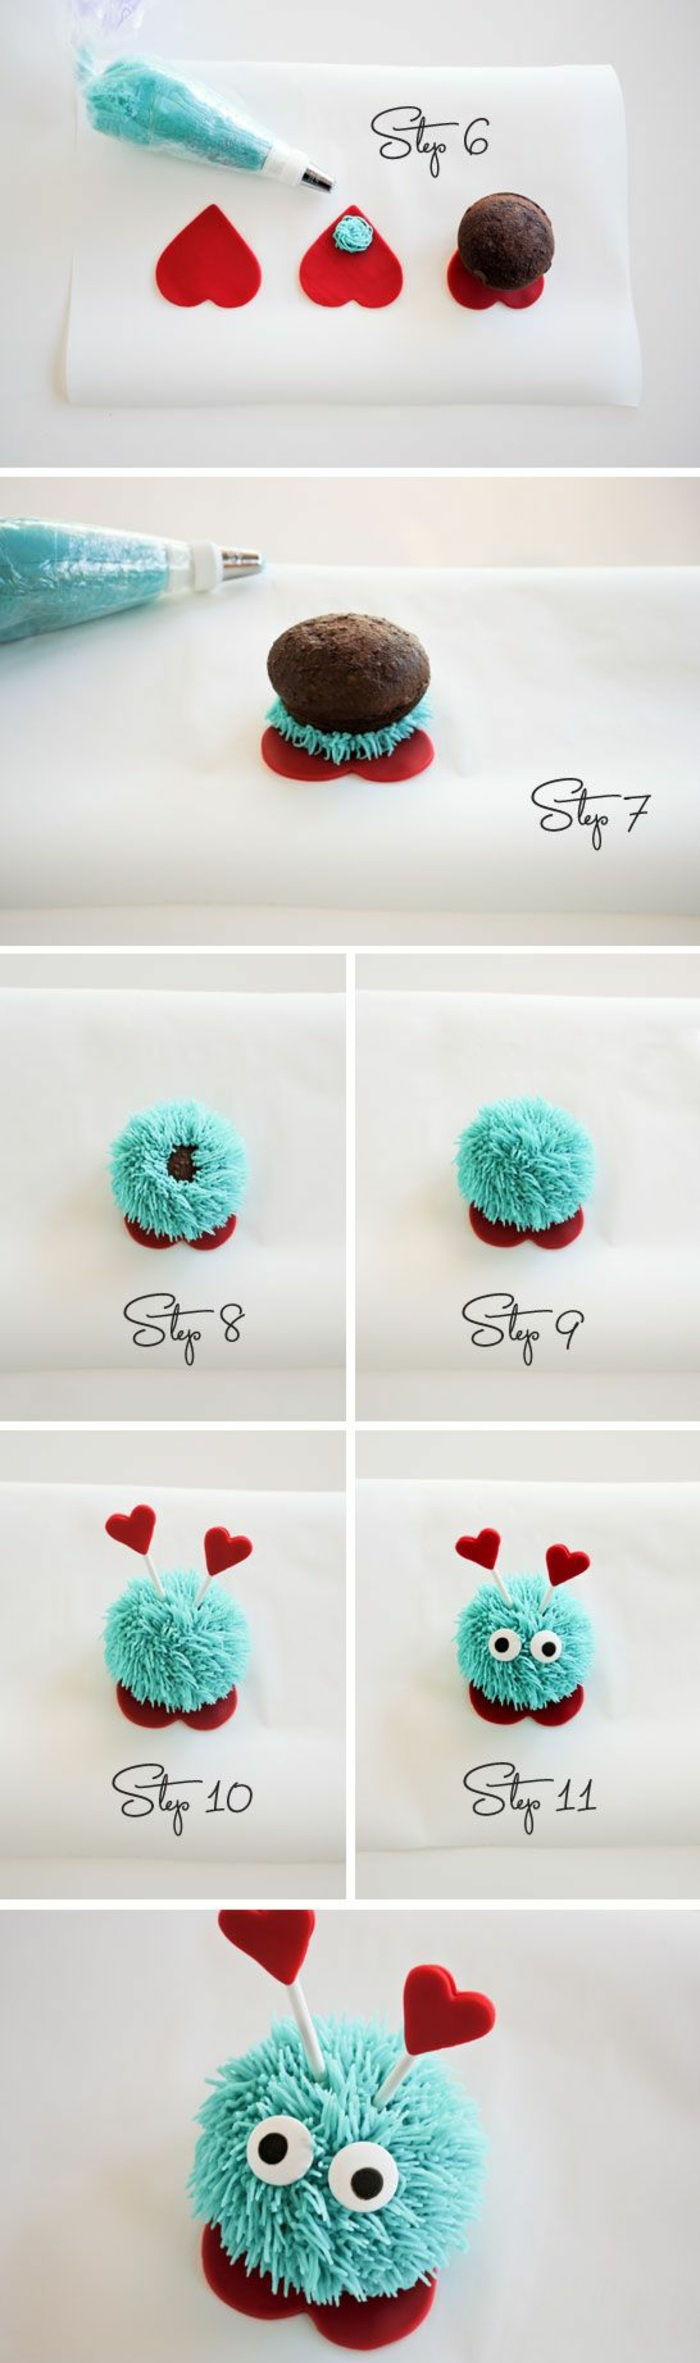 cupcakes versieren met blauwe room en kleine harten